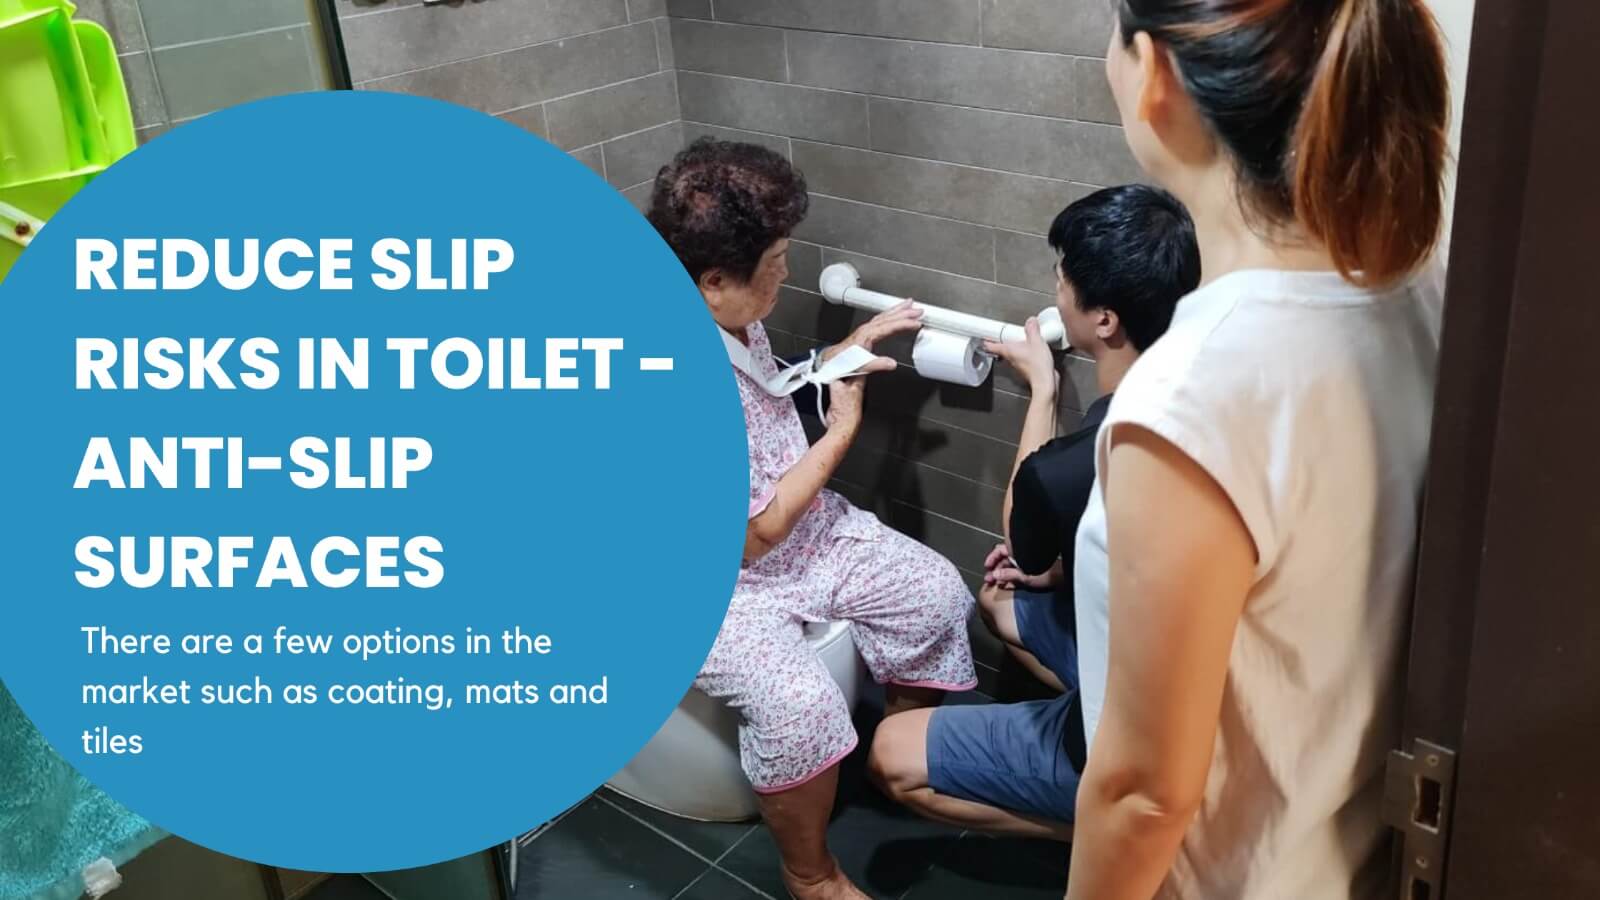 Reduce slip risks in toilet - Anti-Slip surfaces